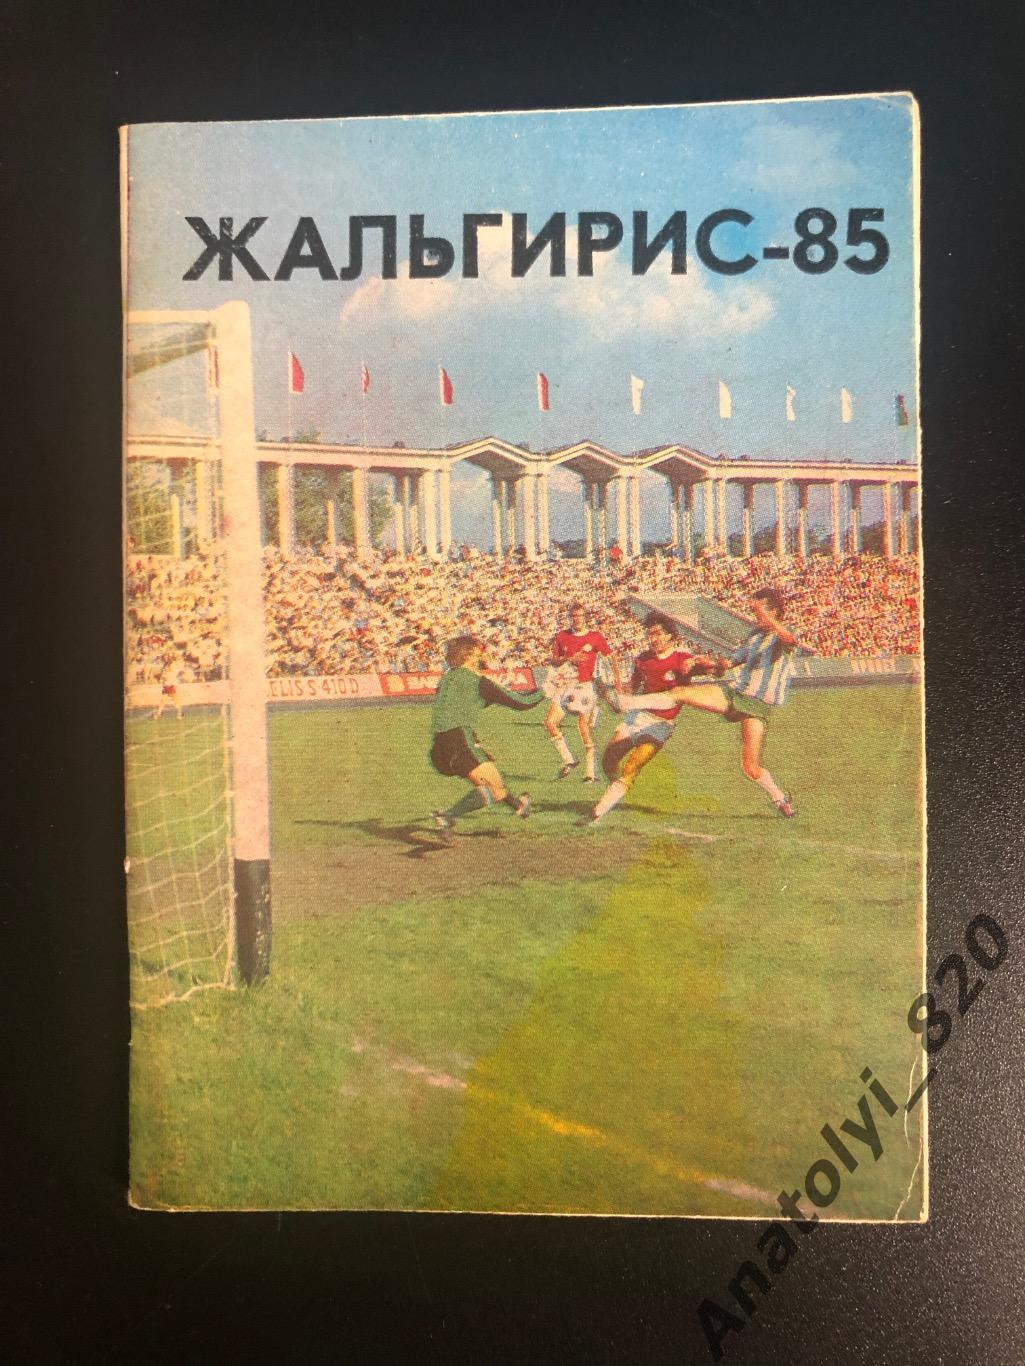 Жальгирис Вильнус 1985 год календарь - справочник на русском языке